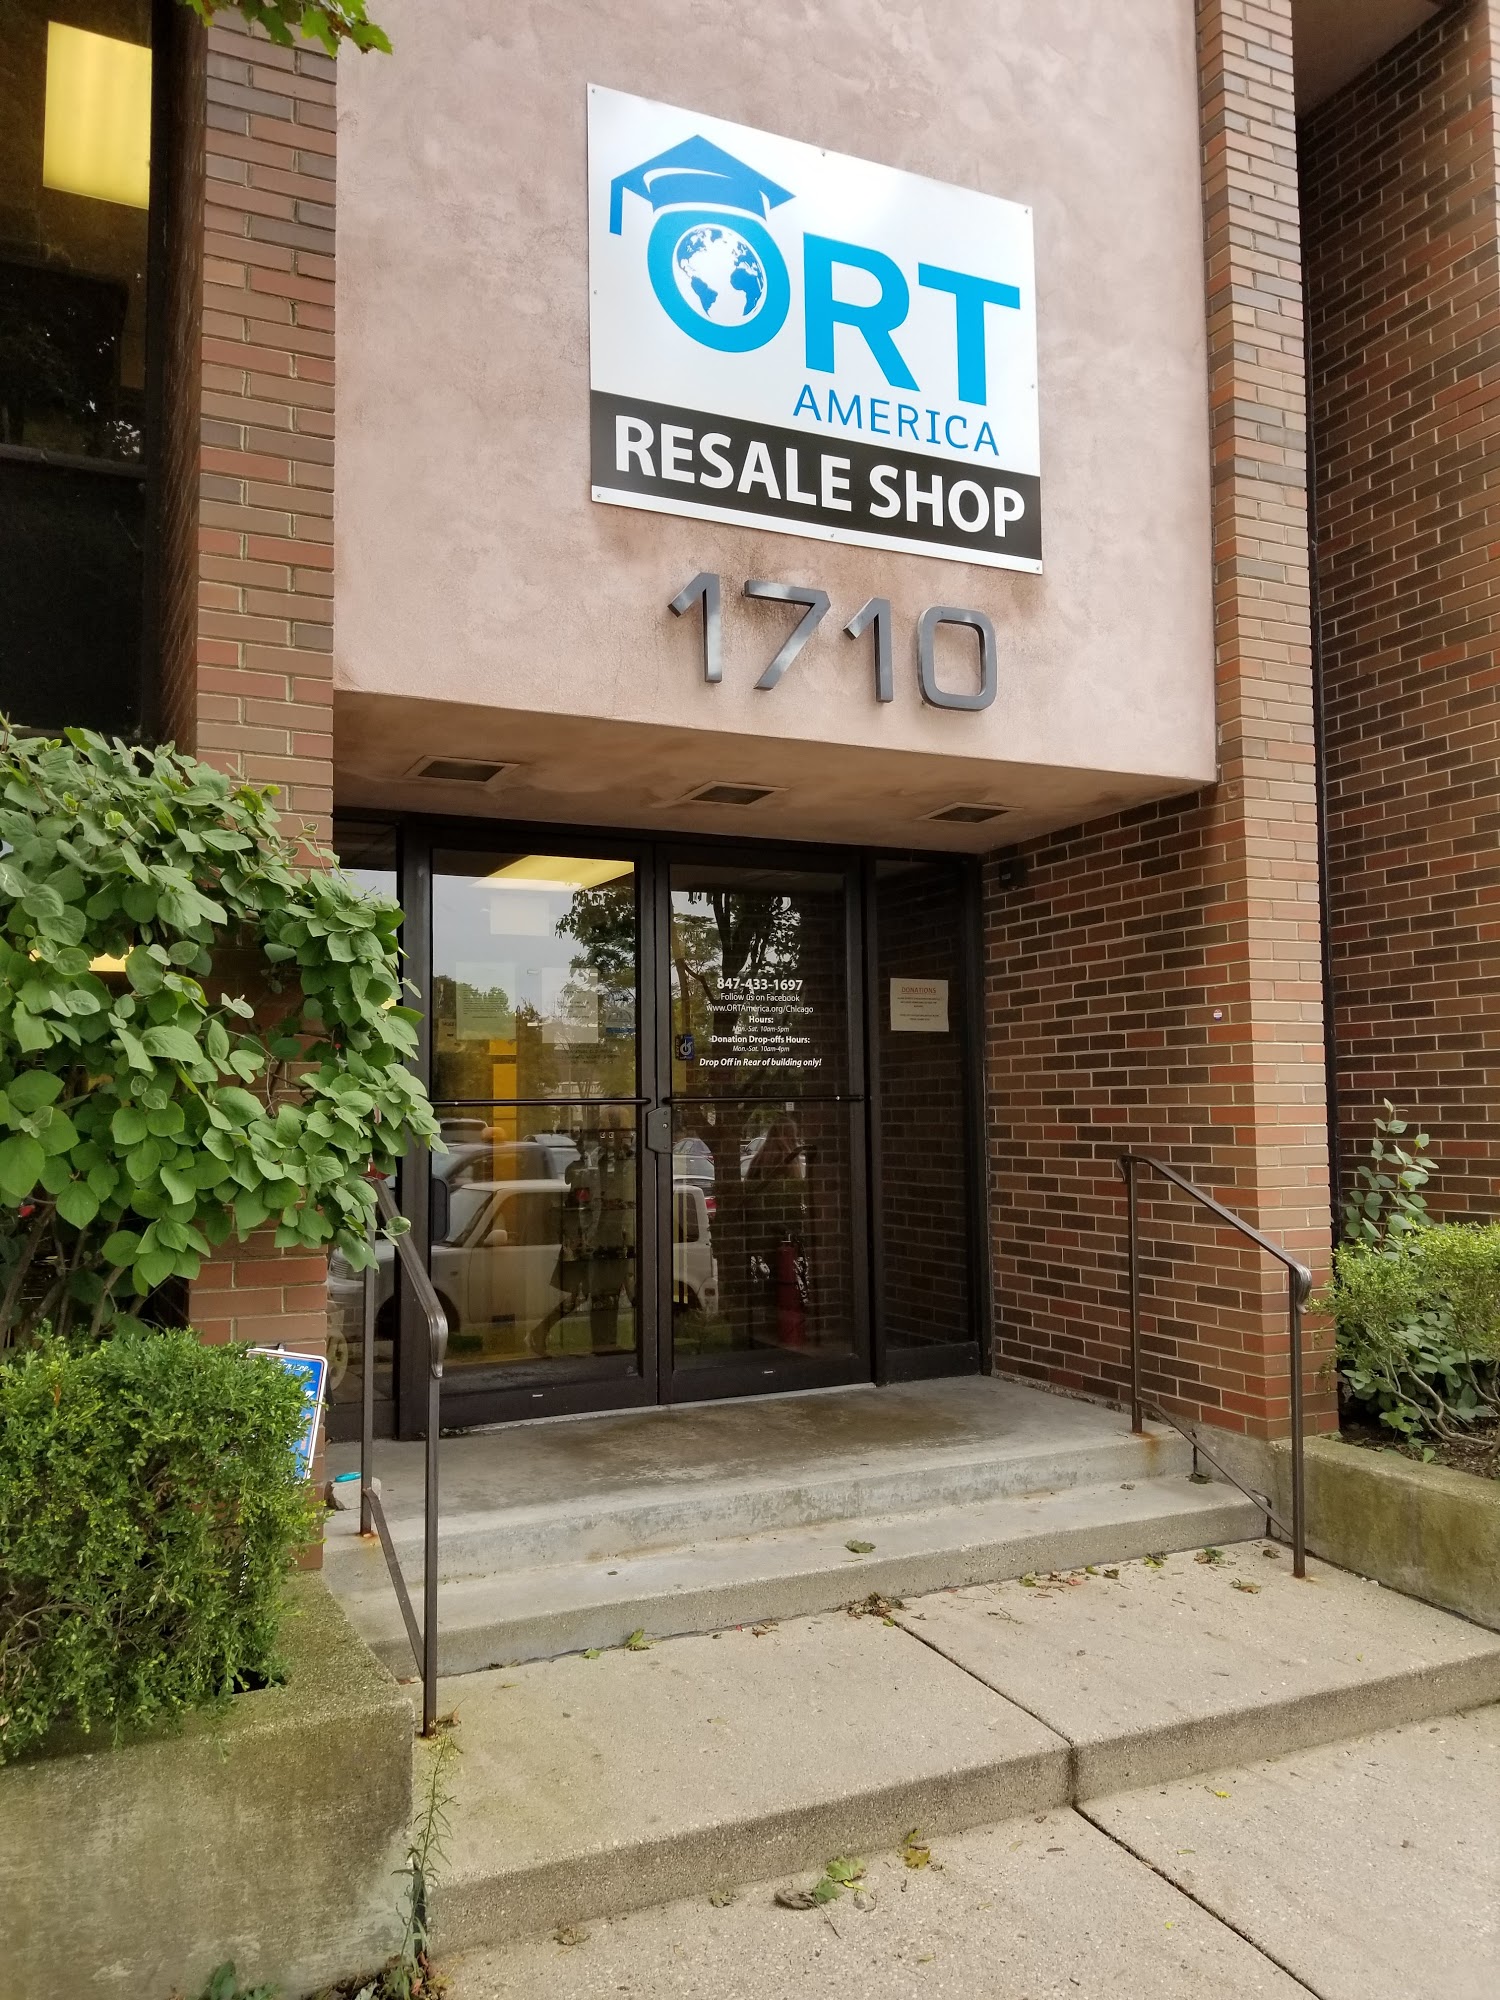 ORT Resale Shop